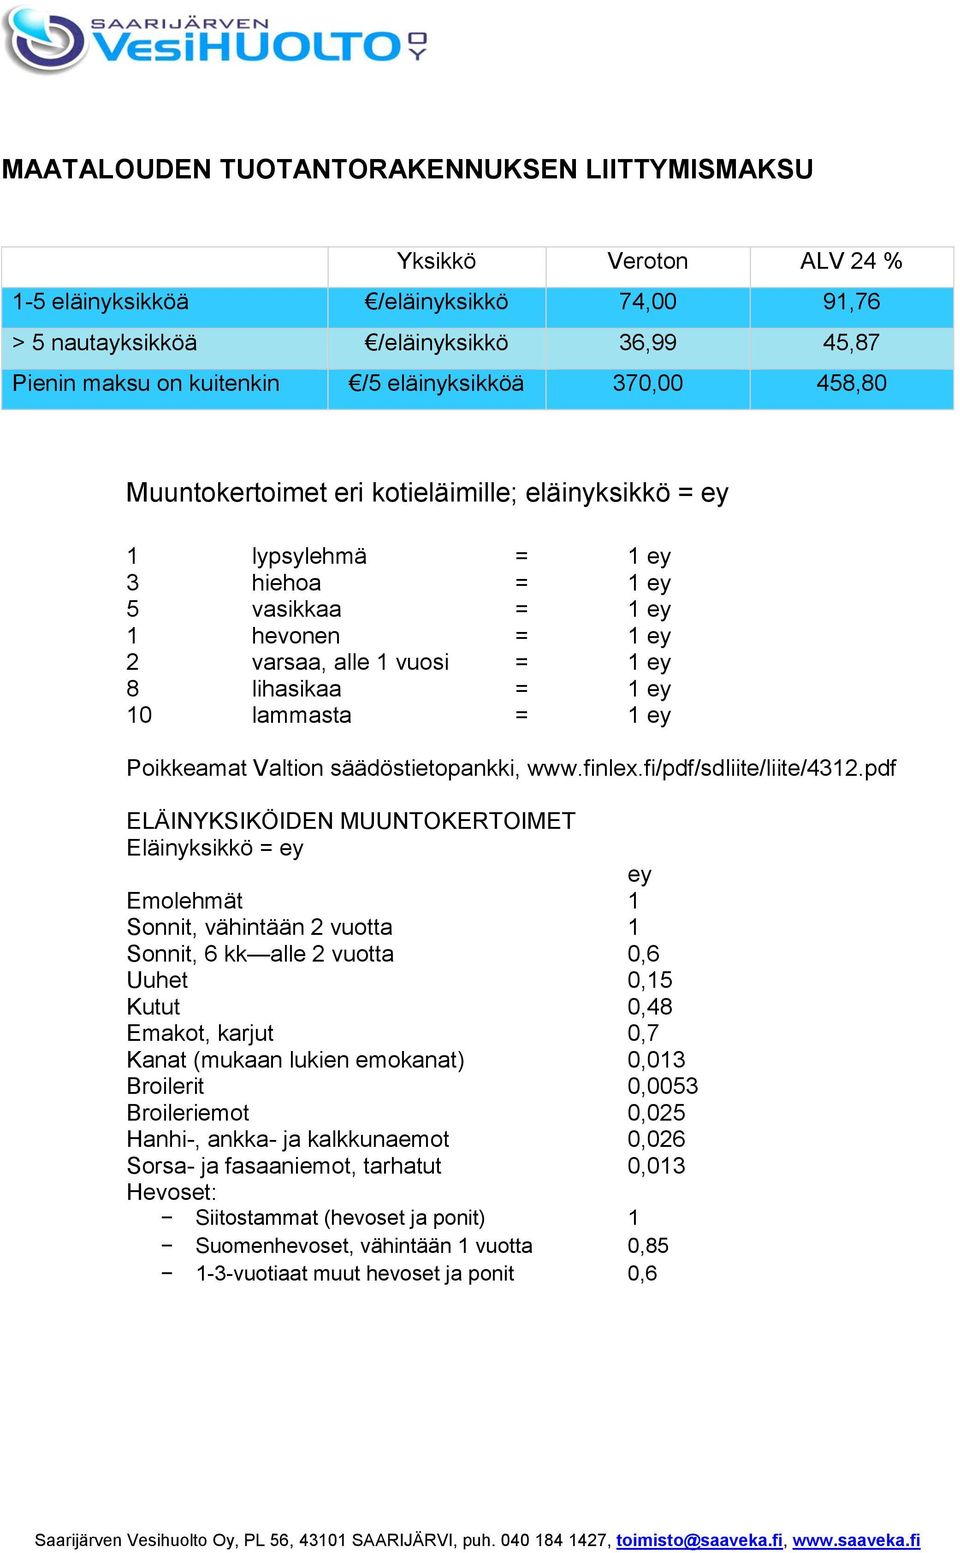 Poikkeamat Valtion säädöstietopankki, www.finlex.fi/pdf/sdliite/liite/4312.